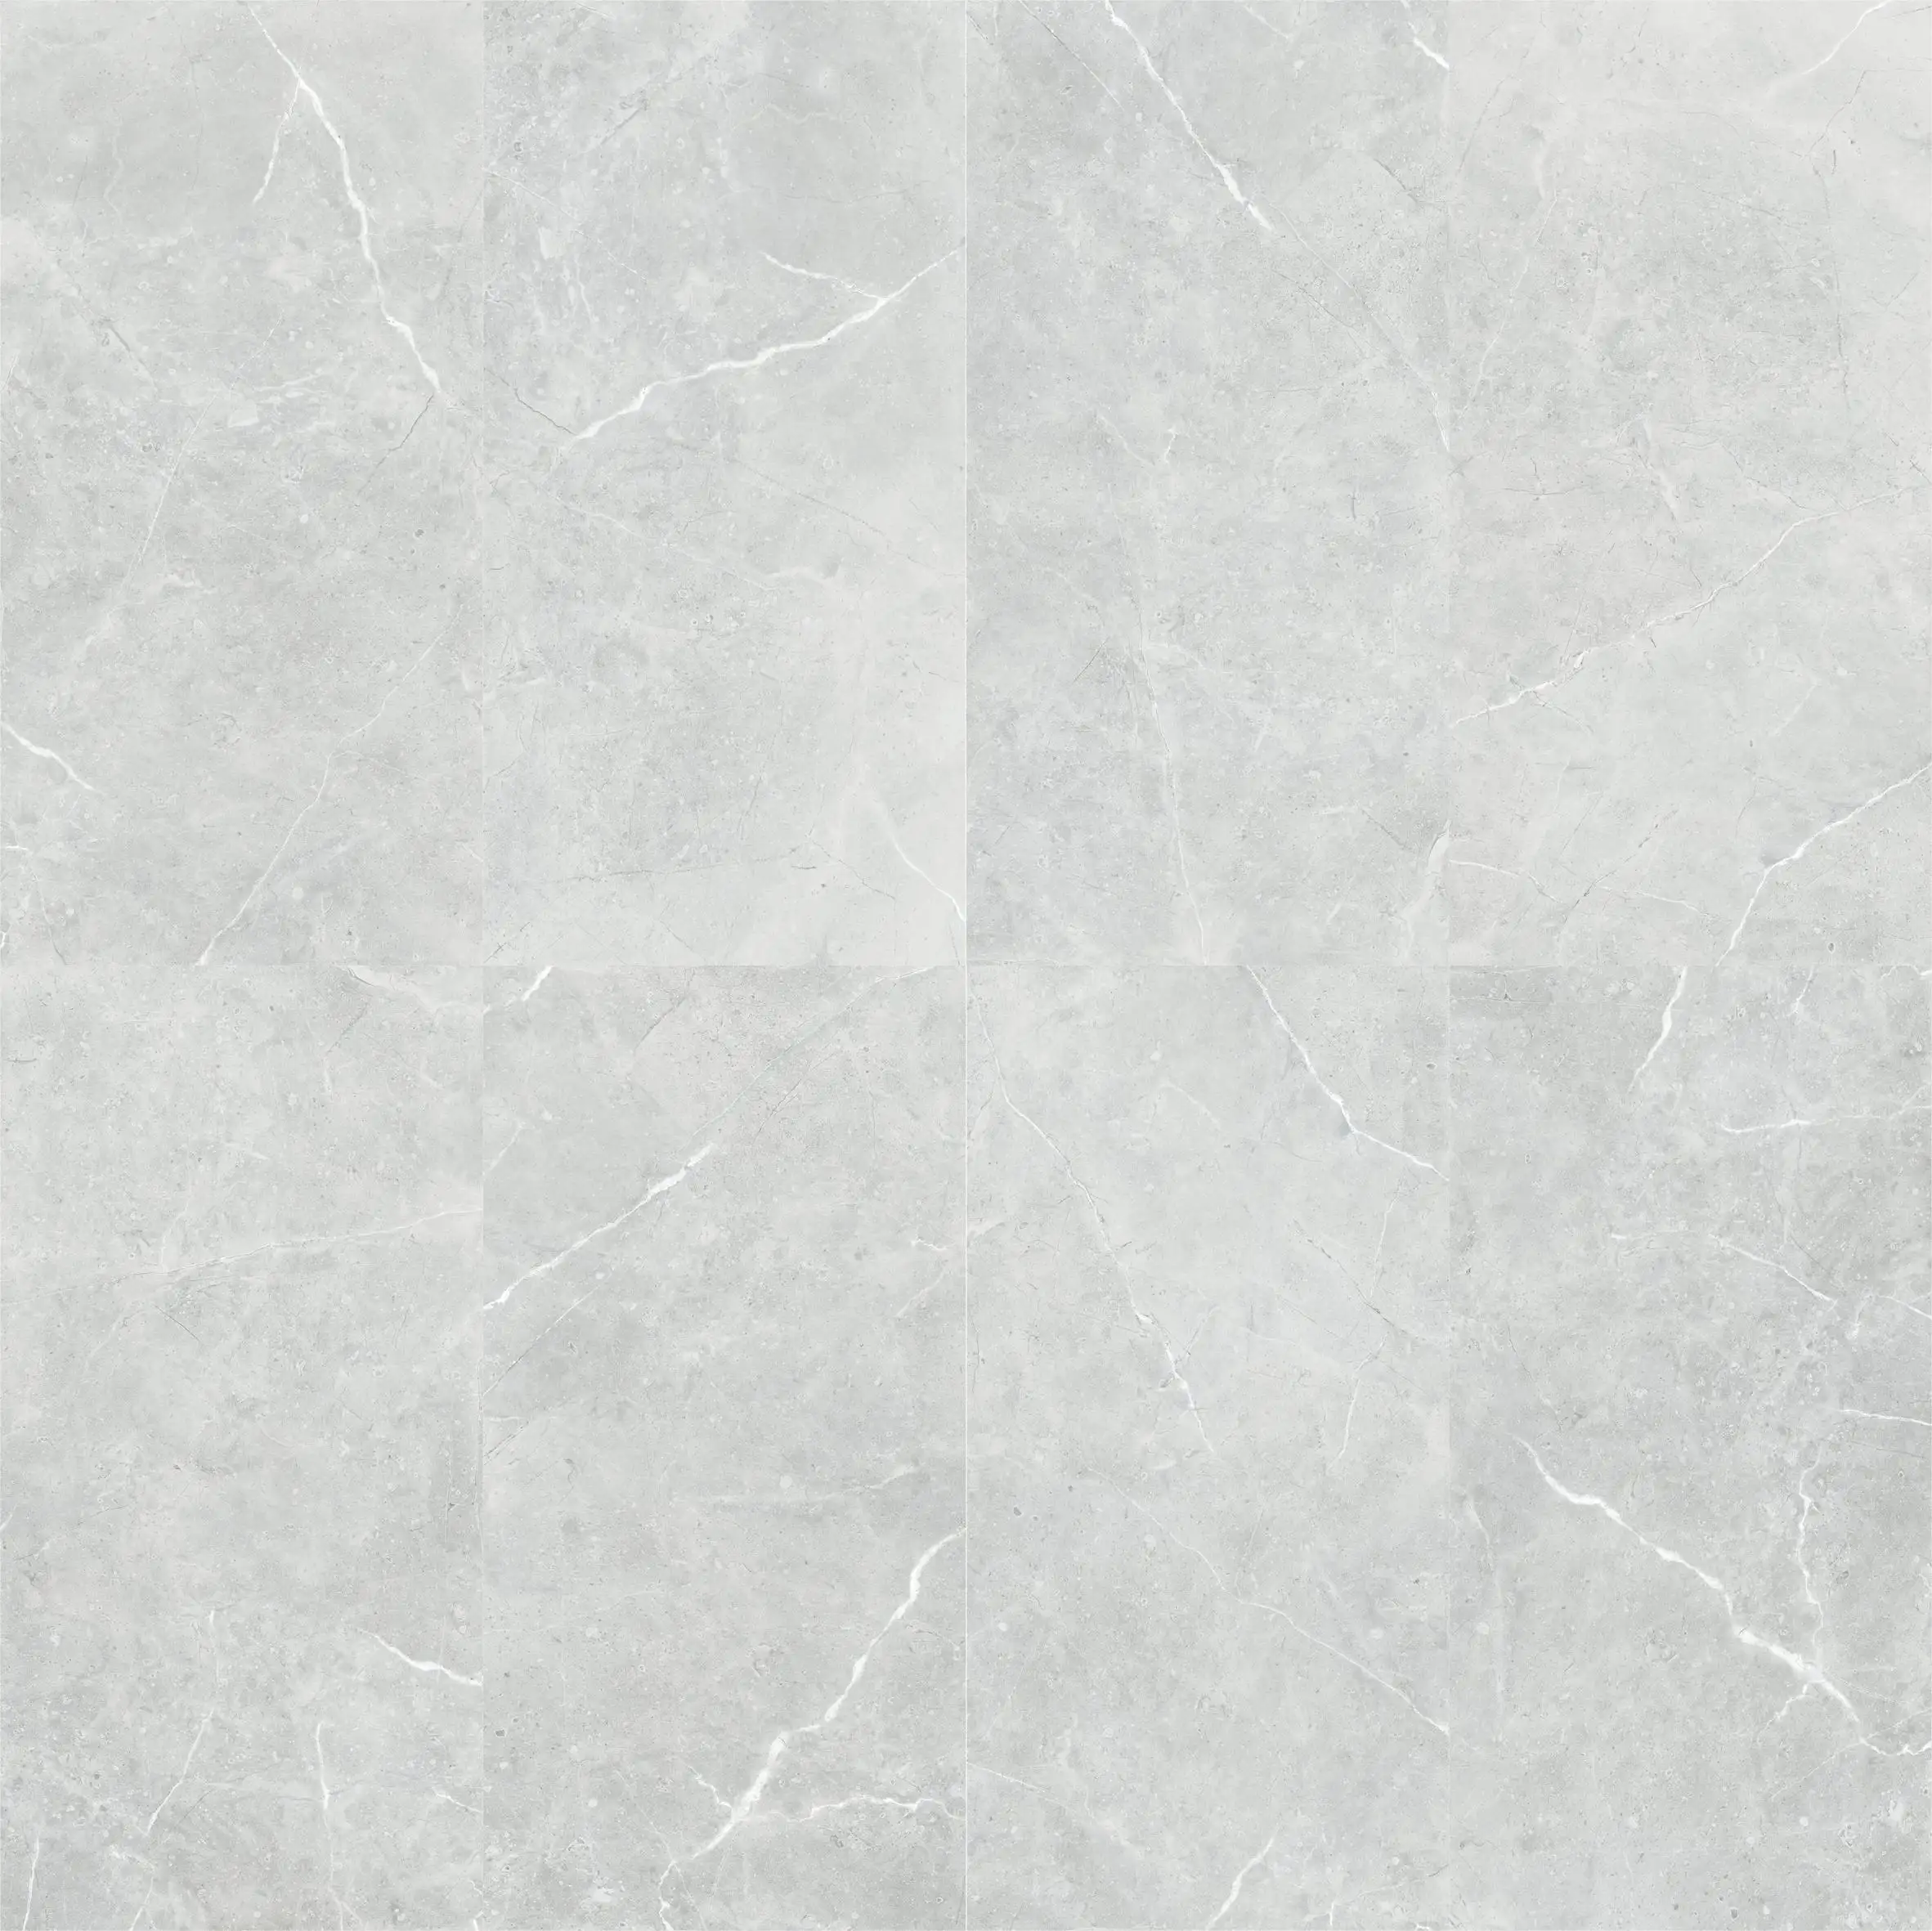 GUCI 600*1200 full body bathroom tile ceramic porcelain wall floor sandstone travertine marble pattern R10 R13